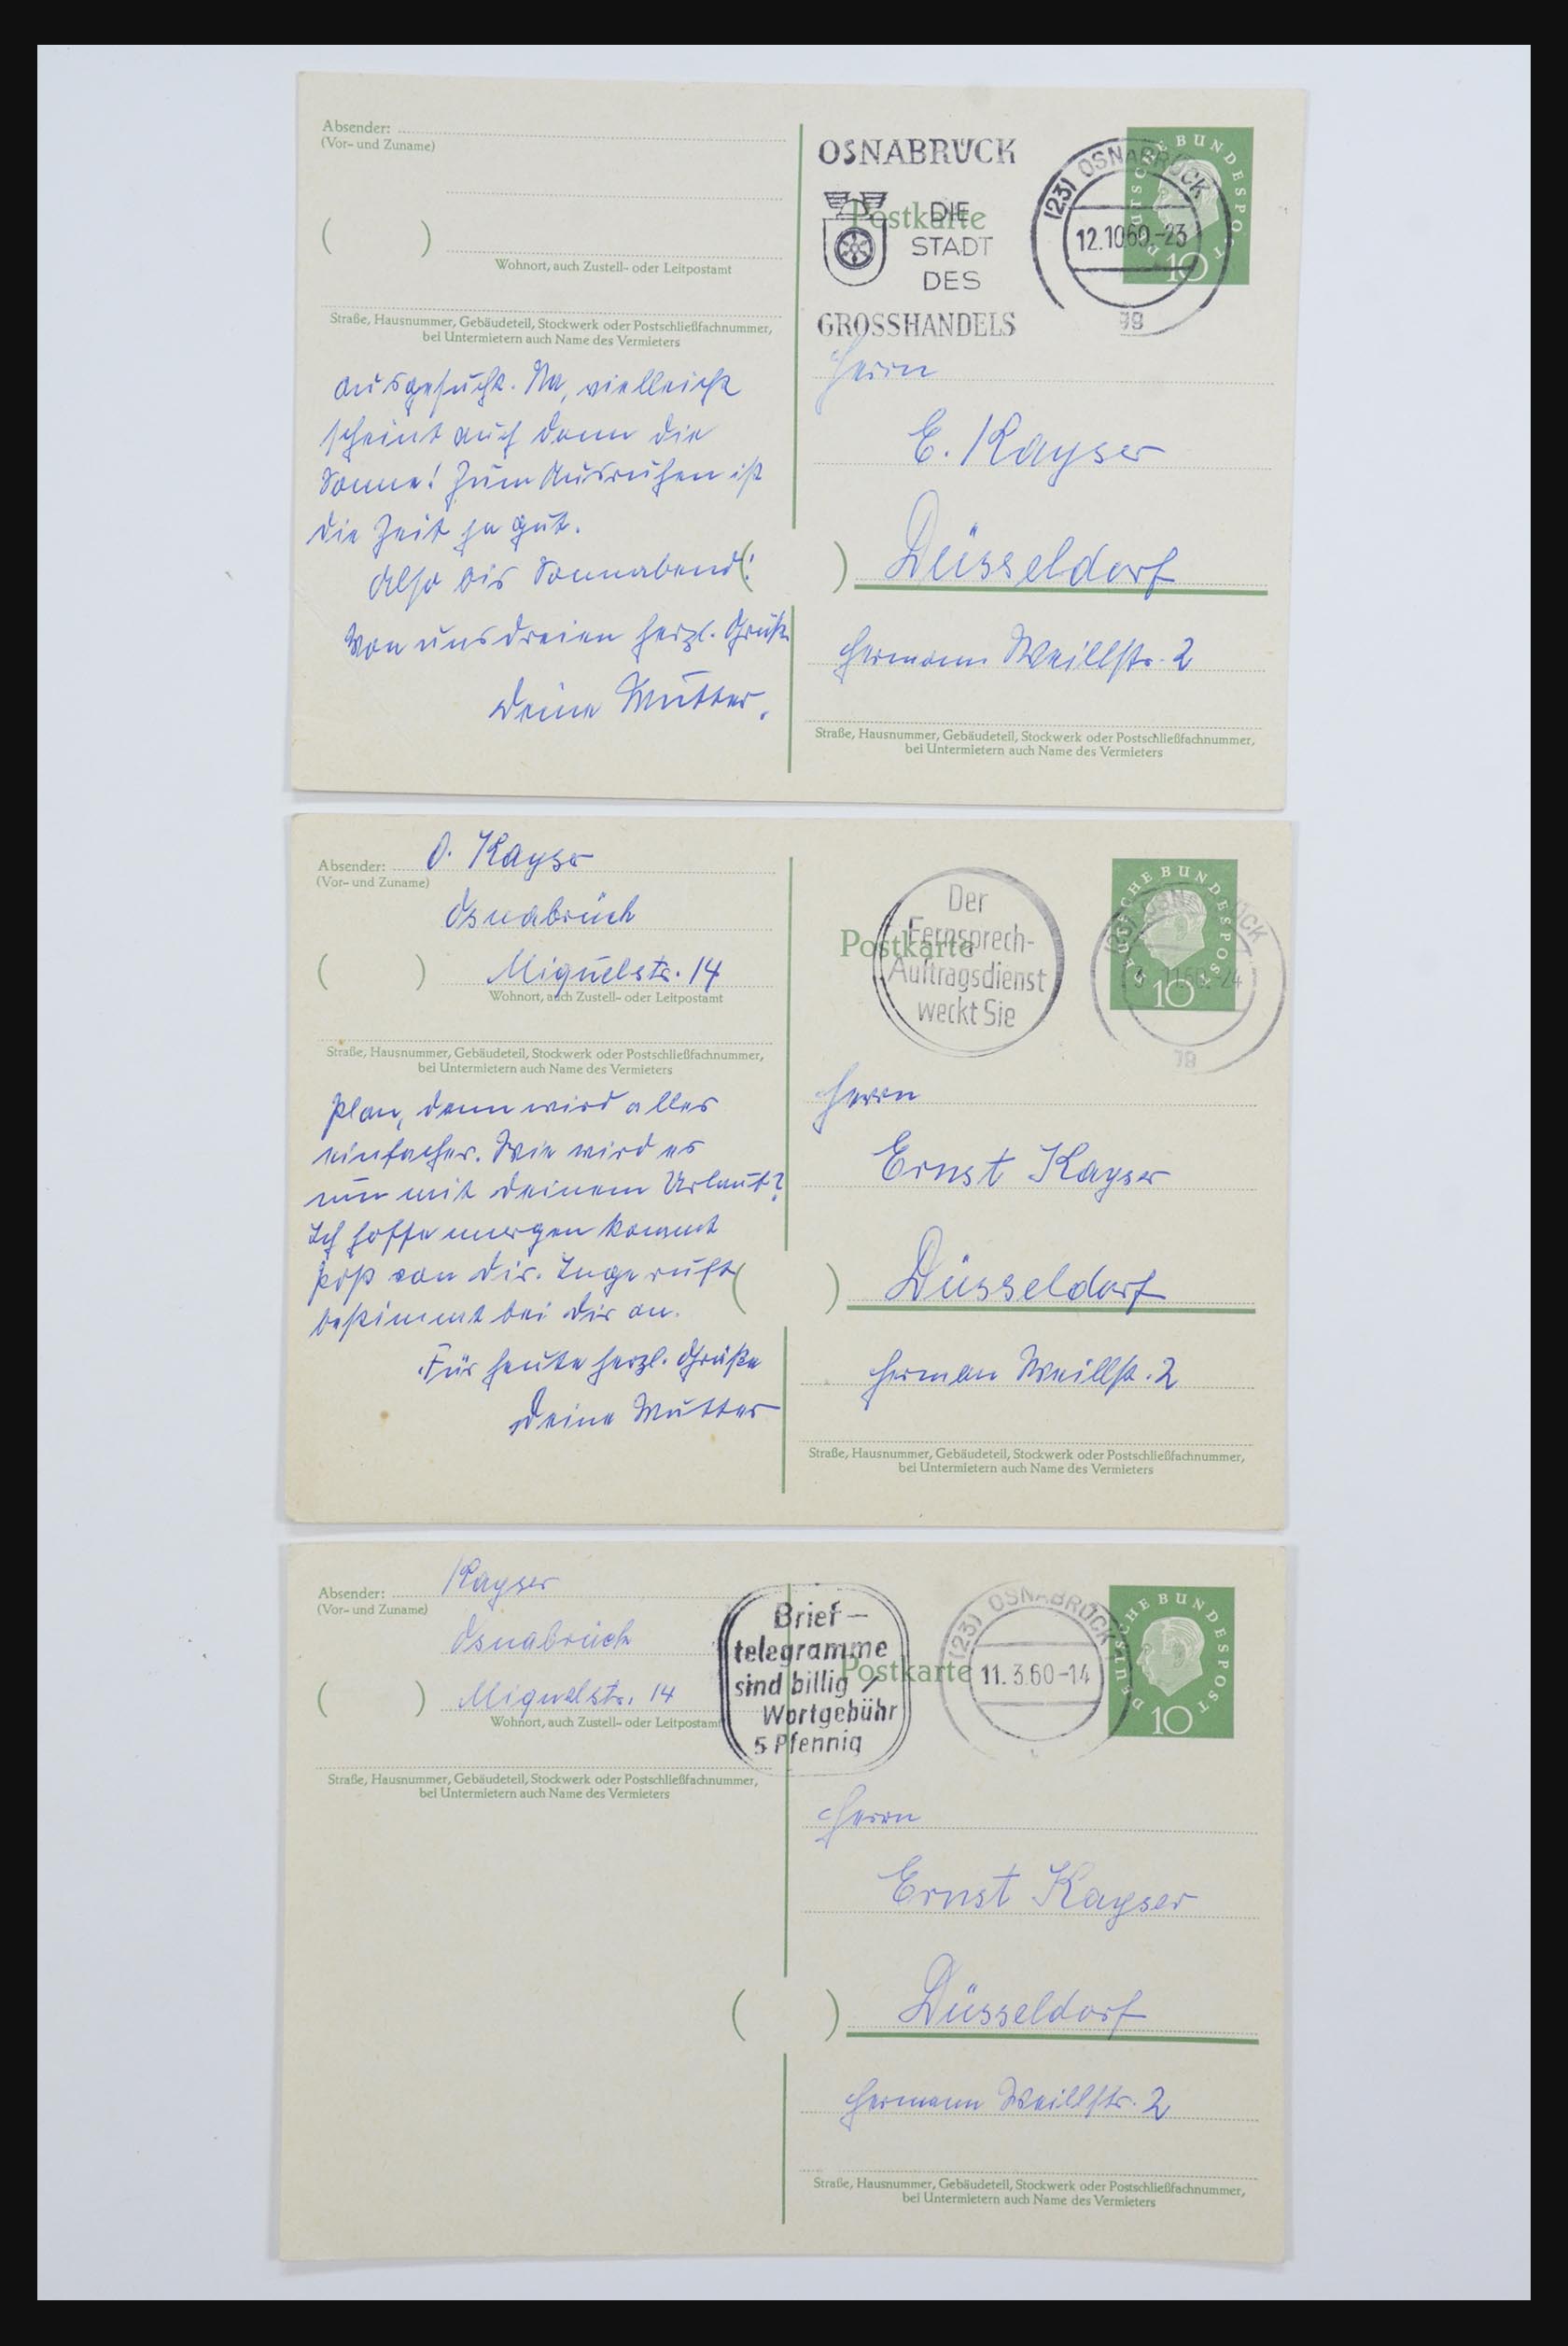 31952 093 - 31952 German Reich cards.